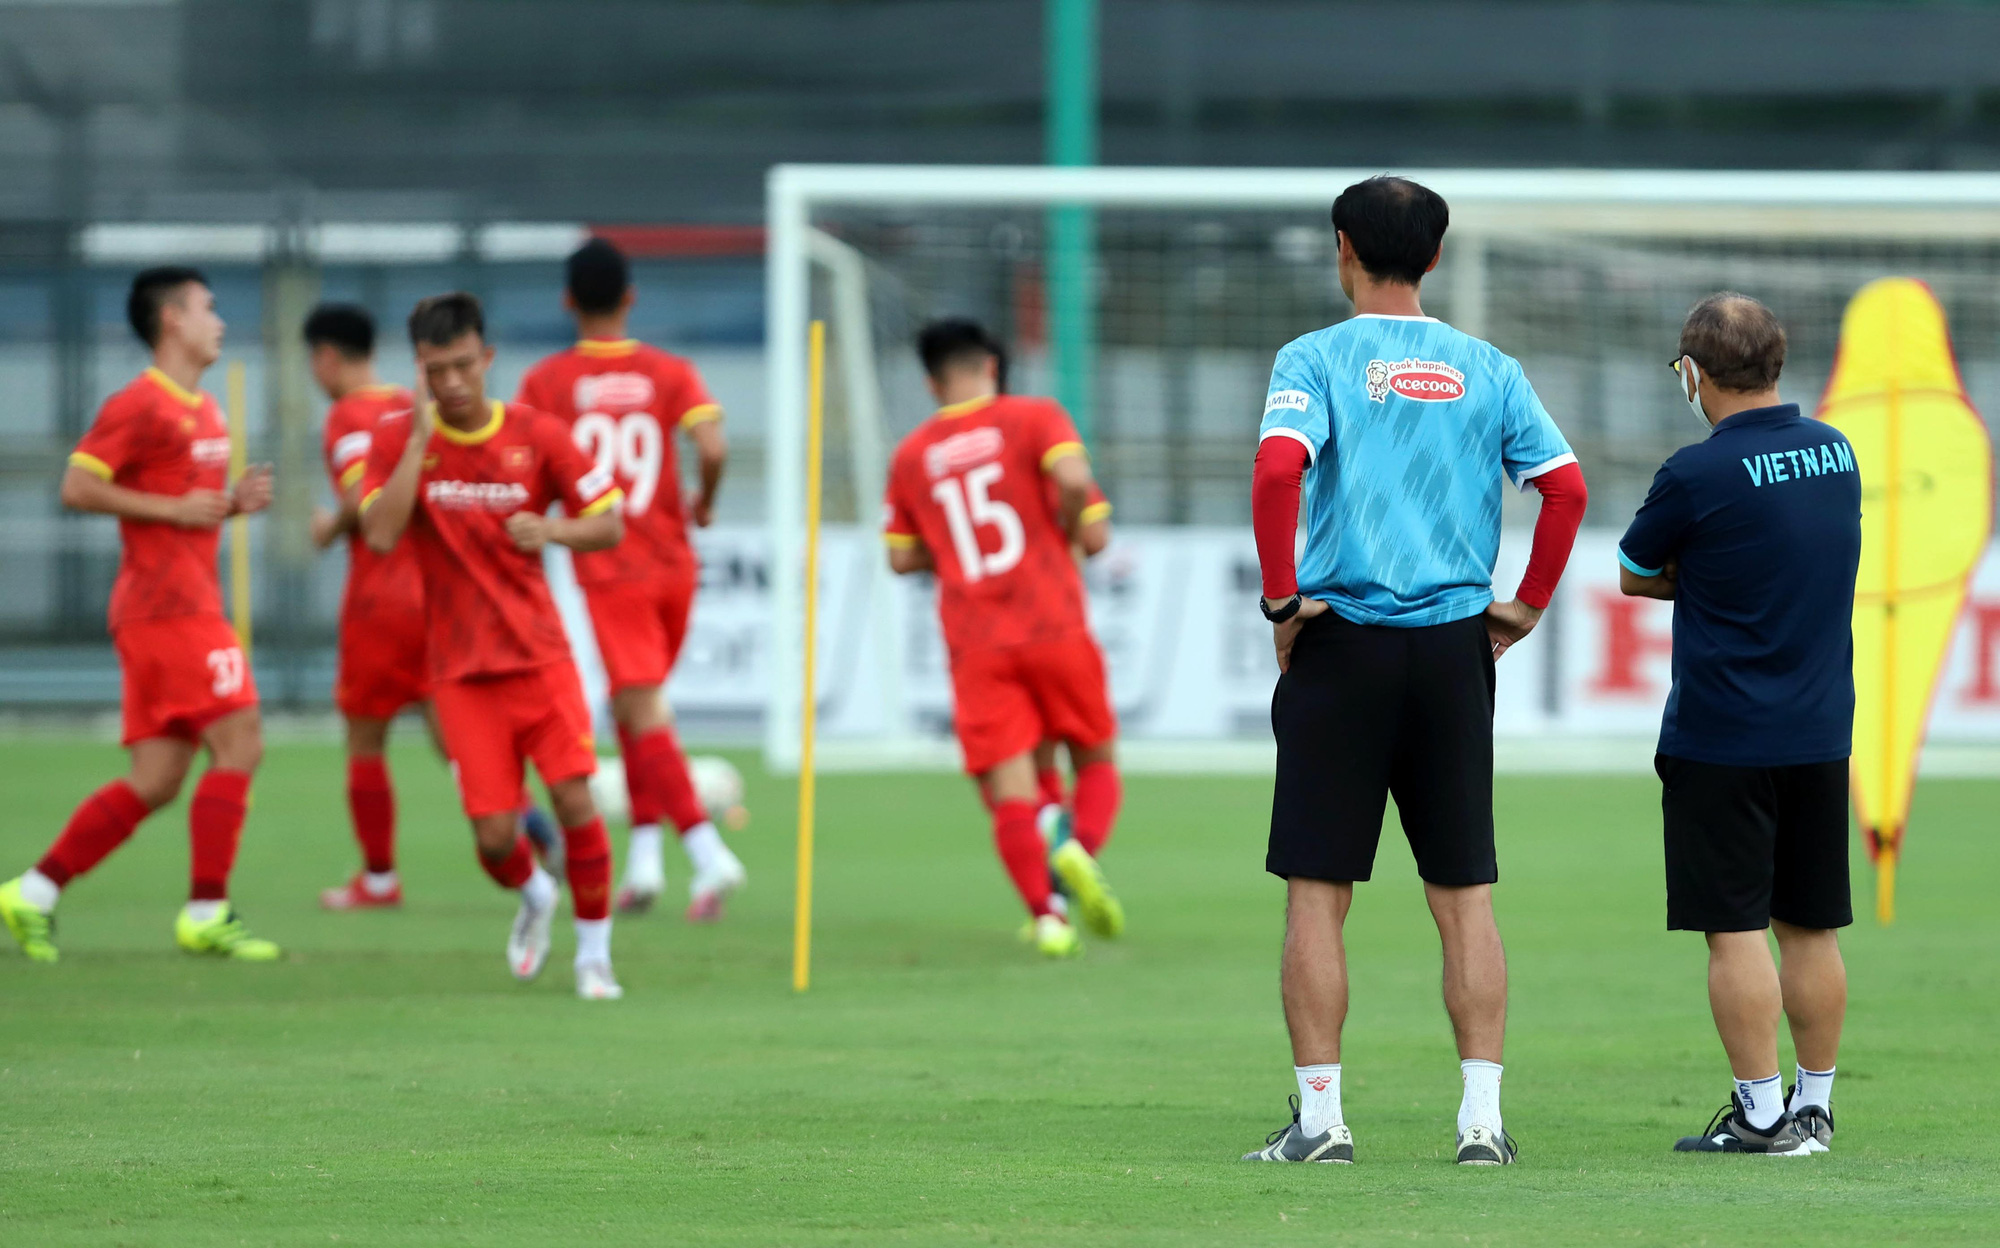 HLV Park Hang-seo thị sát các cầu thủ U22 Việt Nam trước ngày đi tập huấn tại UAE - Ảnh 3.